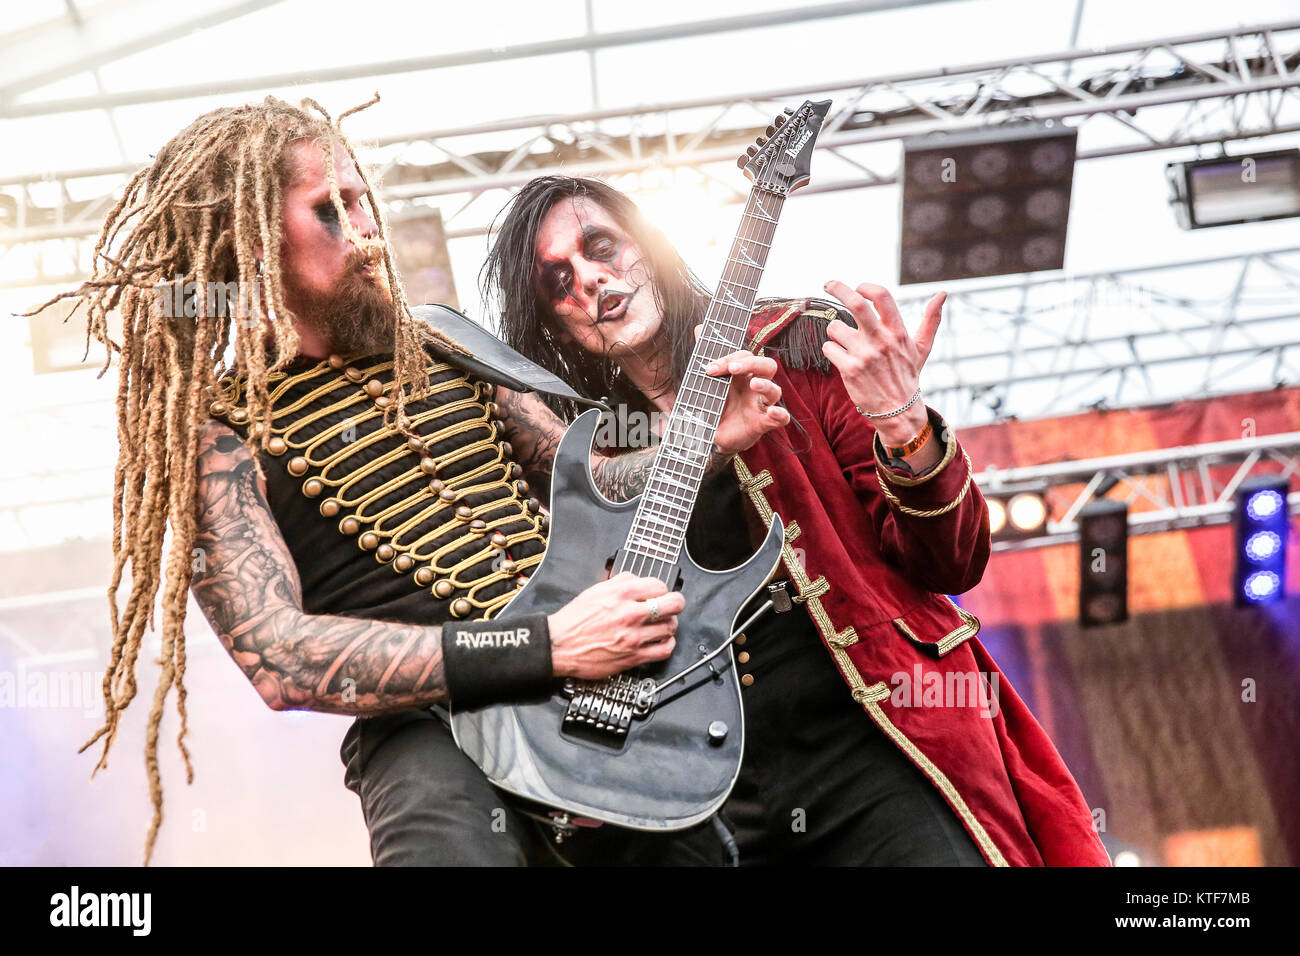 Le groupe de heavy metal suédois Avatar effectue un concert live au festival de musique suédois Sweden Rock Festival 2015. Ici Eckerström chanteur Johannes est vu en direct sur scène avec le guitariste Jonas'. Jarlsby "Kungen La Suède, 06/06 2015. Banque D'Images